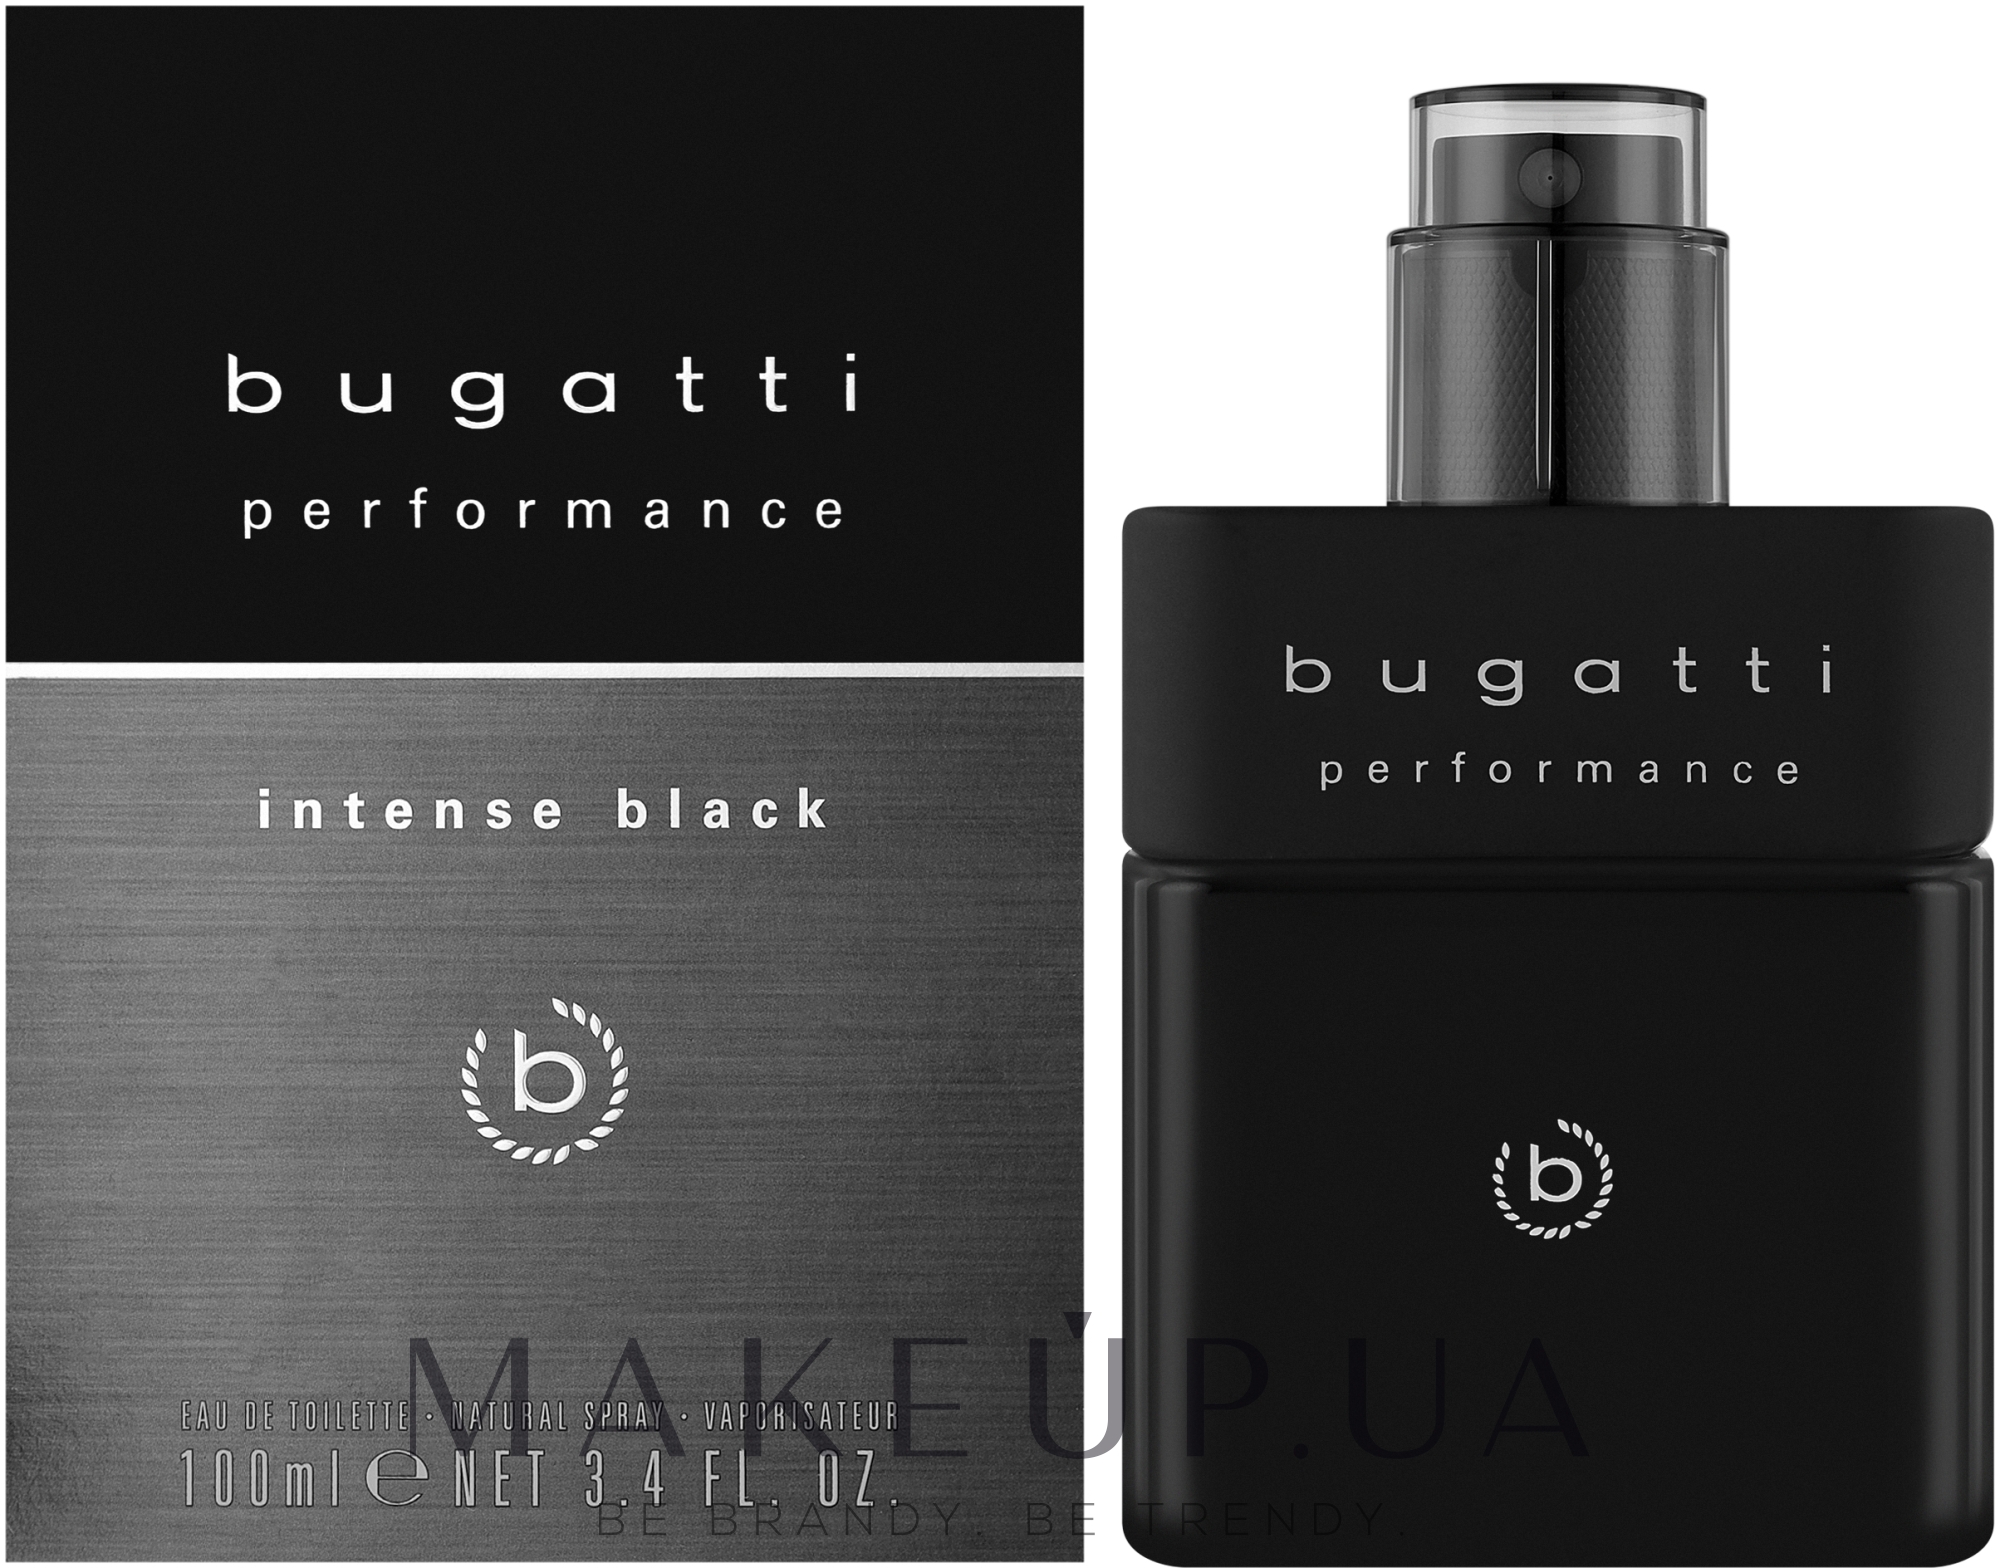 Bugatti Performance Intense цене вода: лучшей в - по Украине Black купить Туалетная